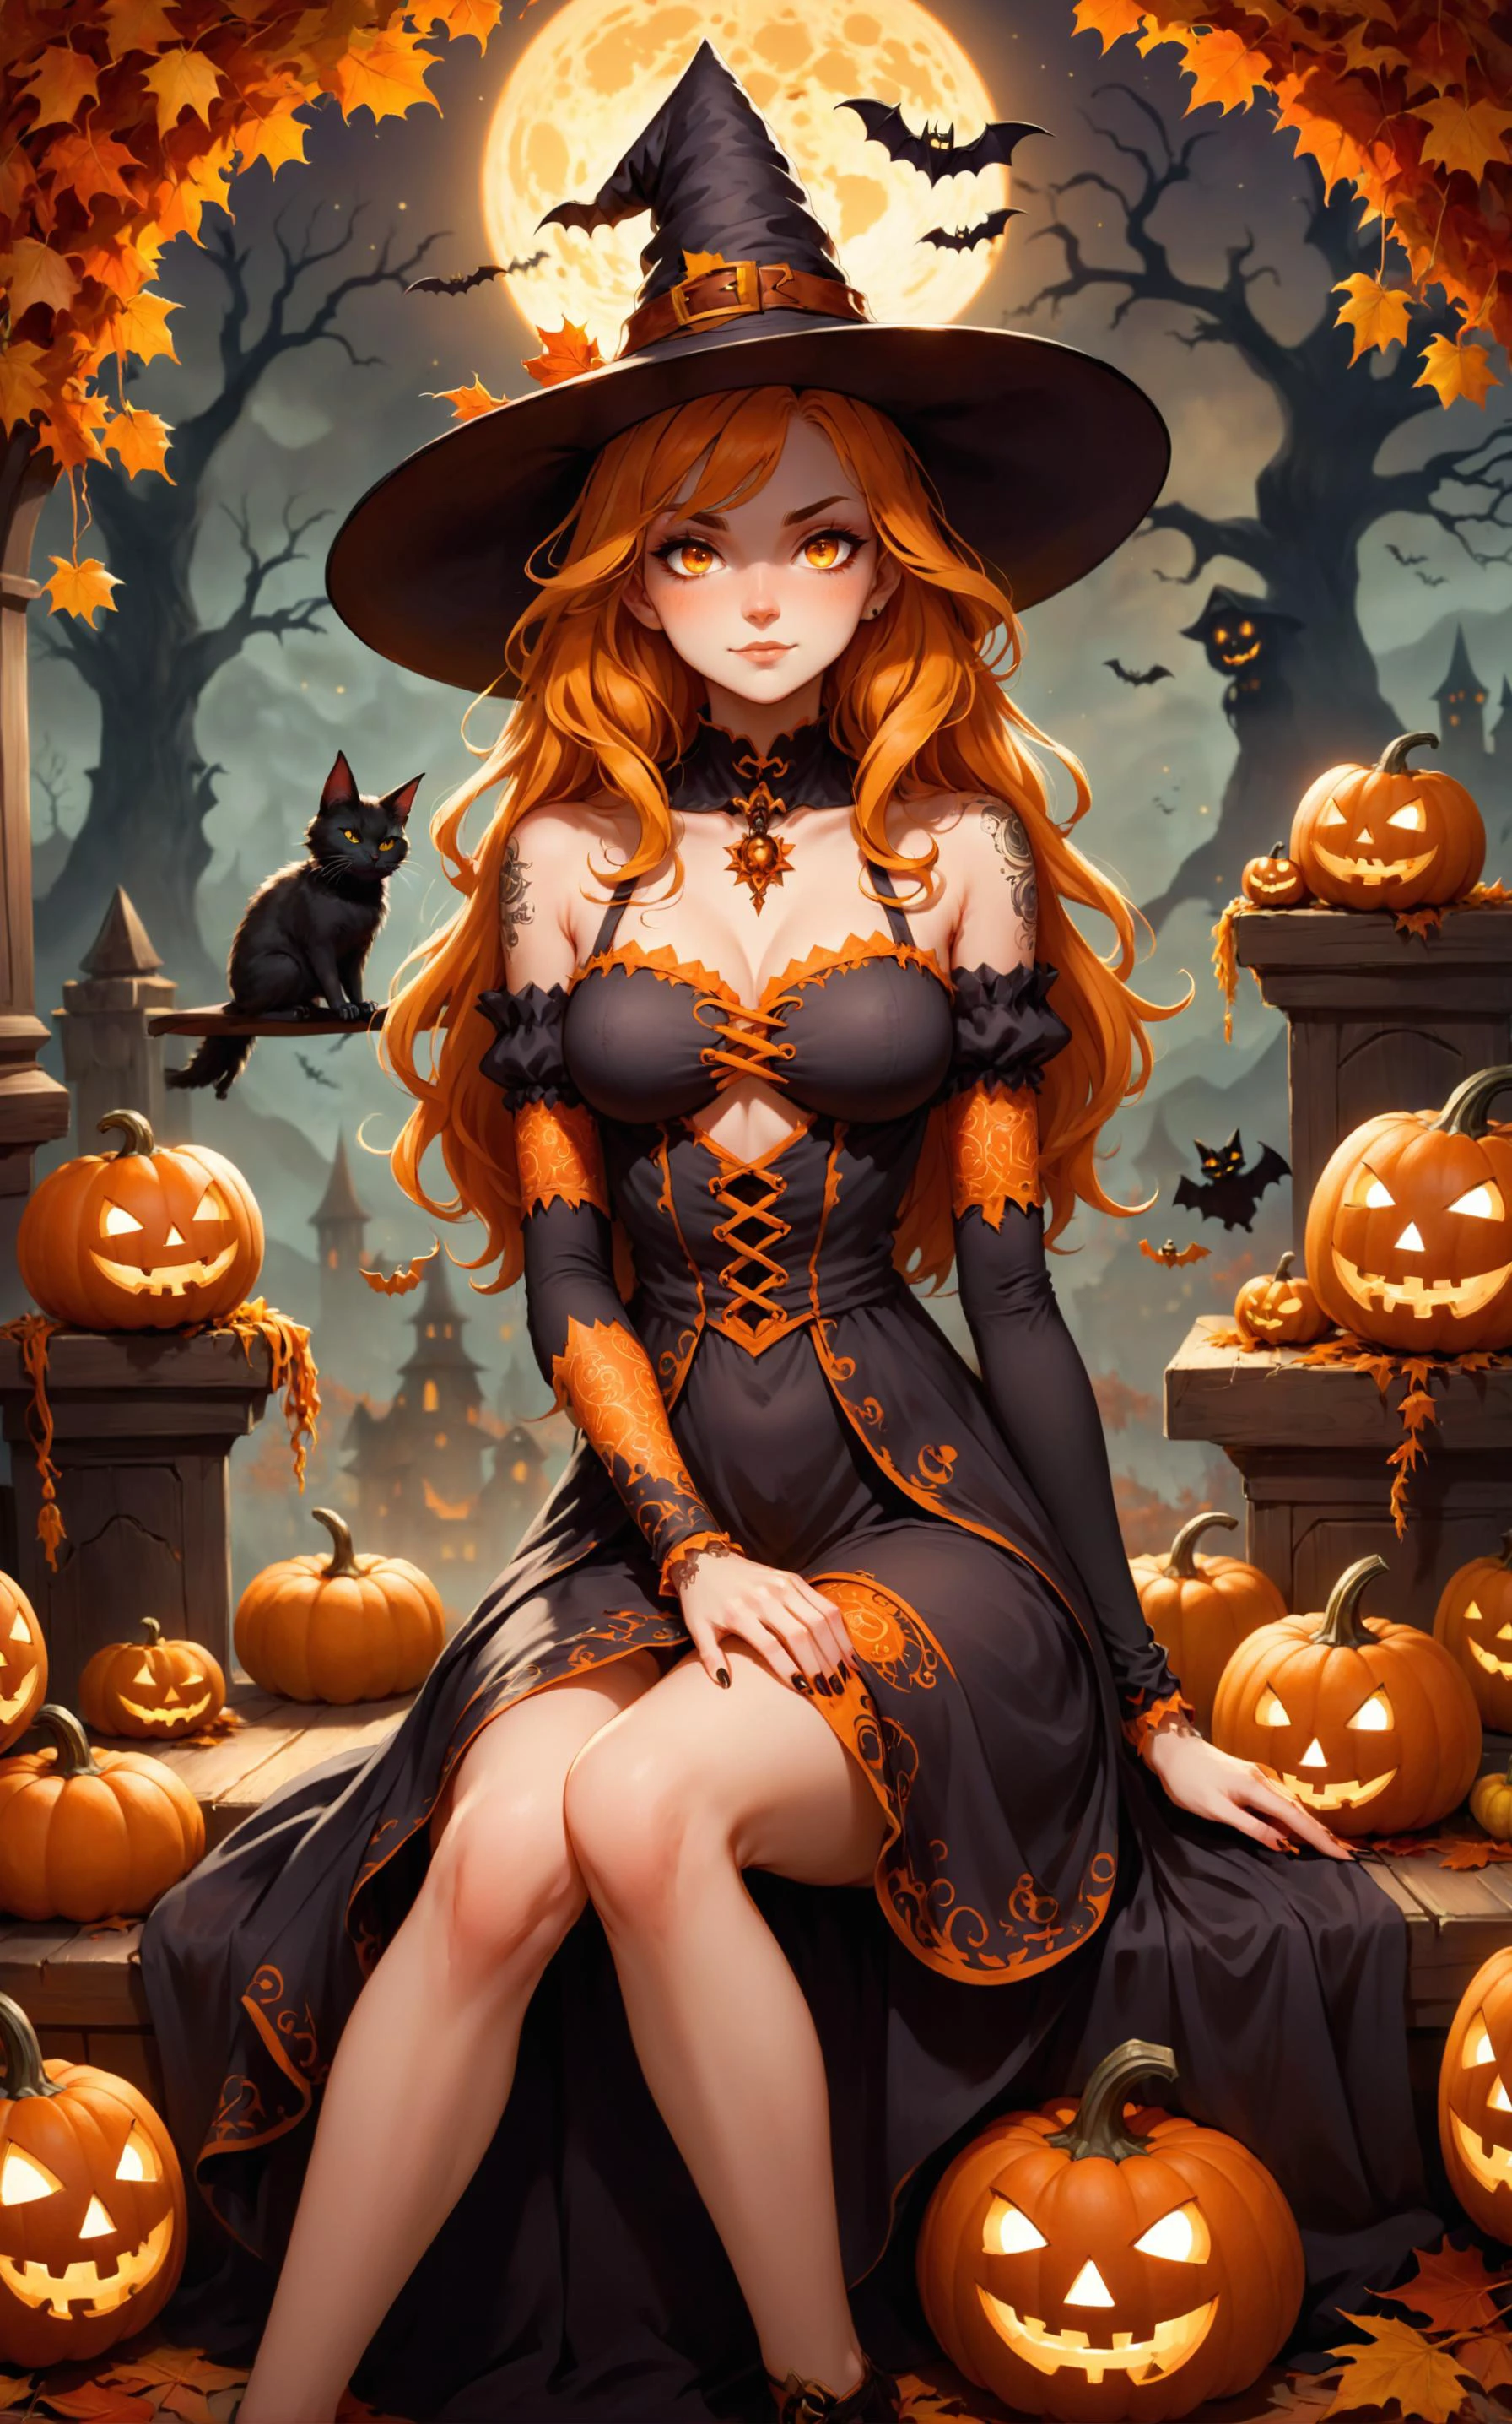 女性キャラクター, 魔女, ハロウィーンをテーマにした背景の中に座っている. 彼女は秋の葉とカボチャで飾られた大きな尖った帽子をかぶっています. 彼女の周りには様々な表情をしたジャック・オー・ランタンがたくさんある. The ambiance is dimly lit with warm orange 黄色 hues, 不気味で神秘的な雰囲気を醸し出す. このキャラクターは長いウェーブのかかった髪をしている, 彼女は複雑なデザインのドレスを着ているのが見られる, 腕にタトゥーのような模様がある.
この画像のアートスタイルは、伝統的なアートとデジタルアートの融合と言える。. 絵画的な質感がある, 柔らかな筆遣いと光と影を強調した. デジタルツールの使用により、キャラクターと環境のレンダリングにおいて高いレベルの詳細さと精度を実現しました。. 全体的な色調は暖色系, オレンジ色が主色, 茶色, 黄色, ハロウィーンをテーマにした雰囲気を醸し出す.
画像の雰囲気は魅惑的で神秘的です. ハロウィーンの時期に設定されているようです, たくさんのジャック・オー・ランタンがシーンを照らします. 若い女性キャラクター, possibly 魔女, この背景の中に座っている, 思慮深く穏やかな態度を醸し出す. 彼女のポーズ, 雰囲気と相まって, 今後の祝祭に対する反省と期待感を示唆している。.